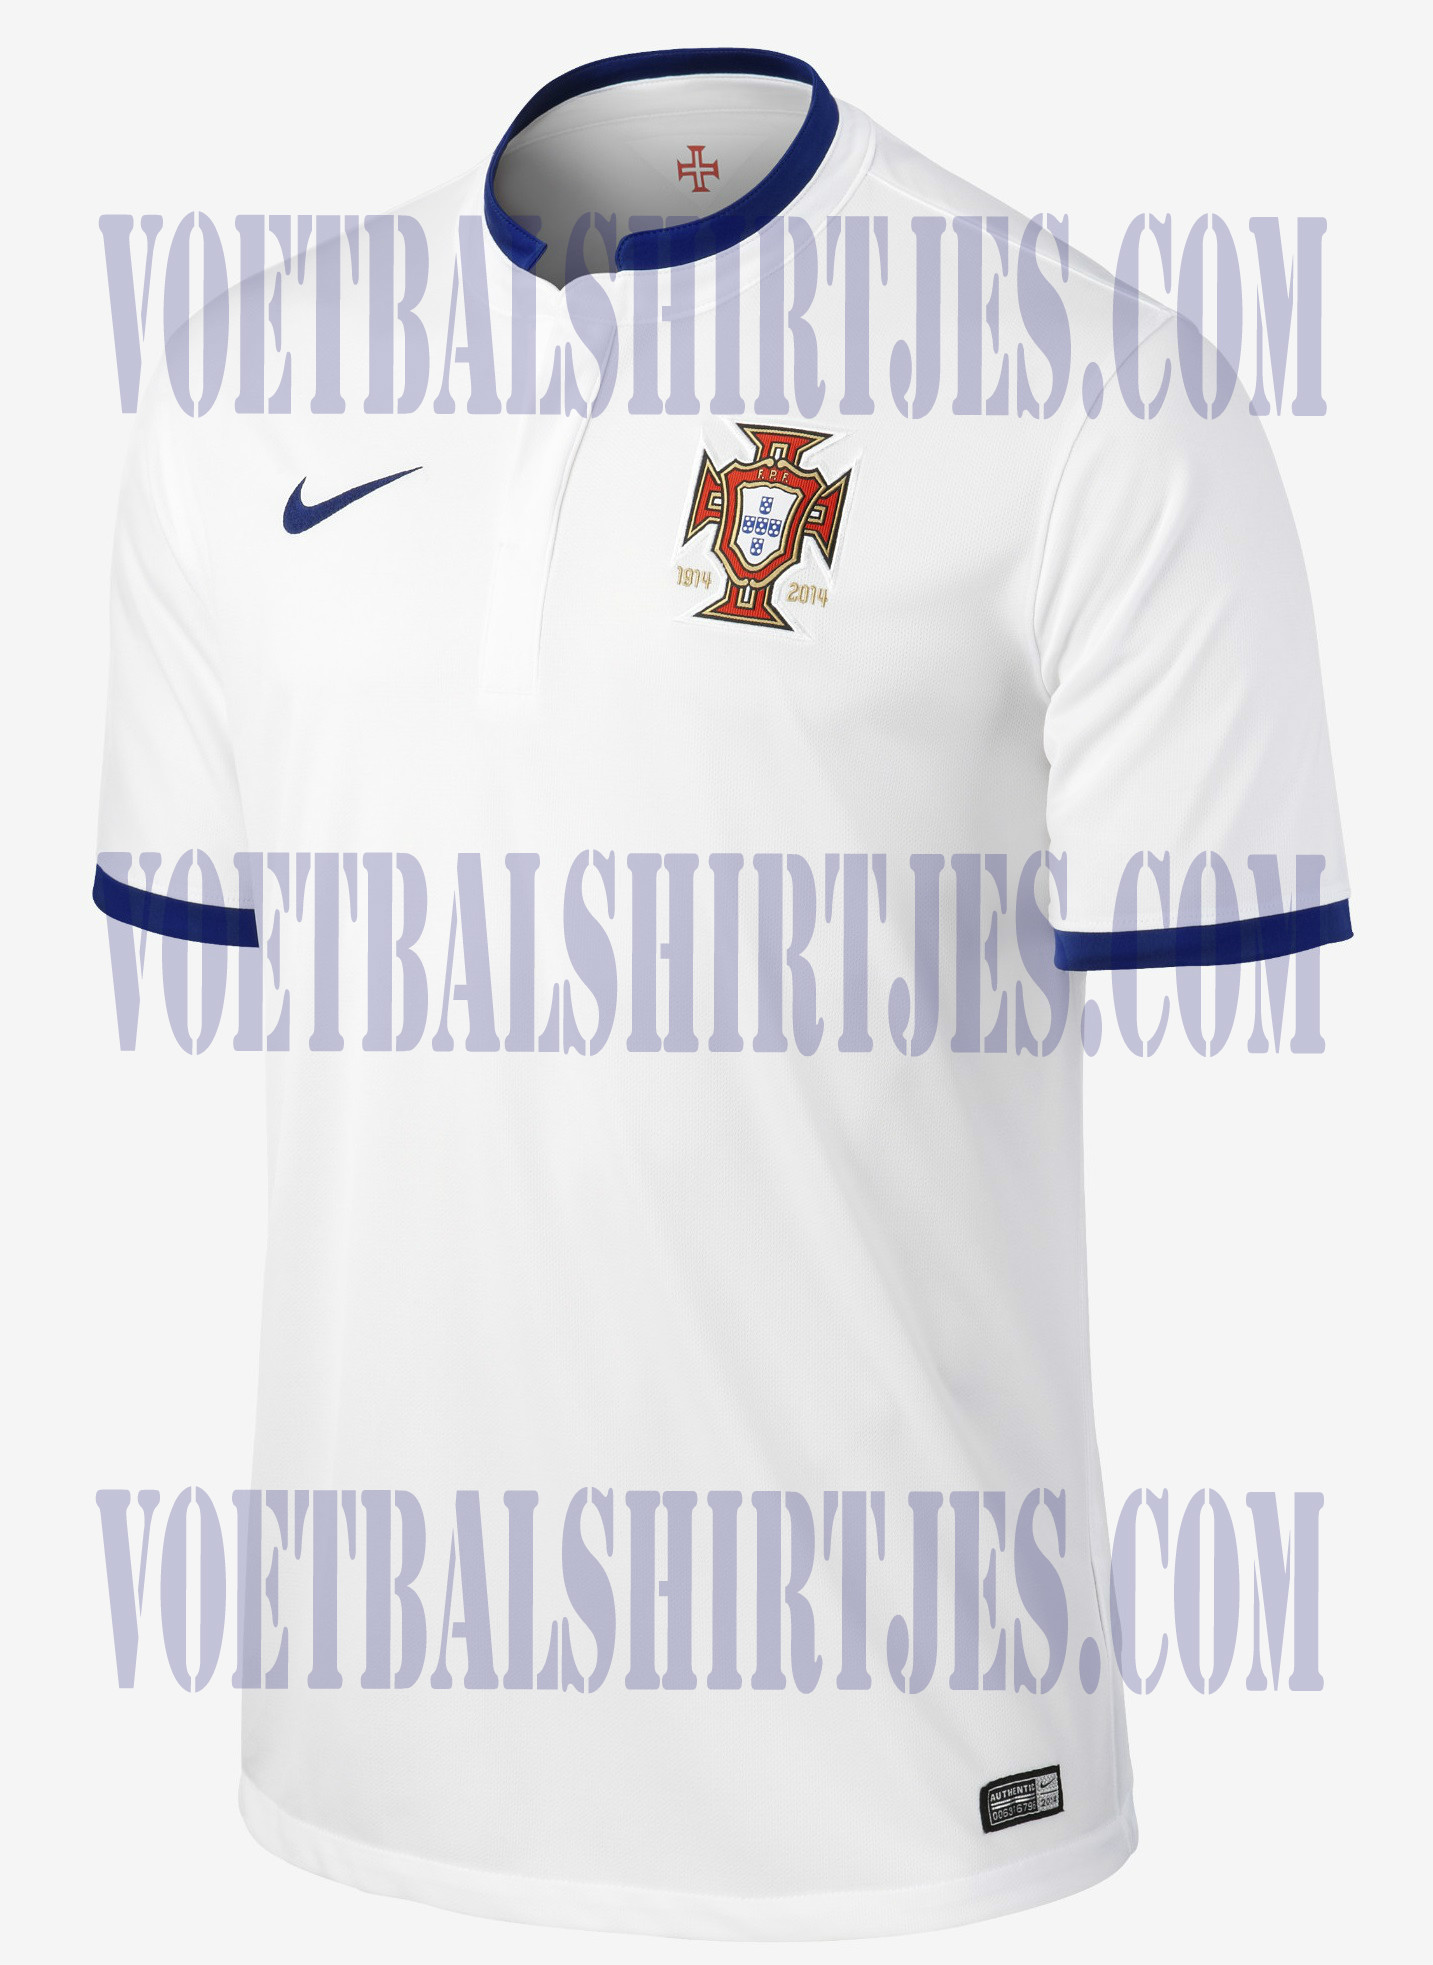 Camiseta 2 Portugal 2014 